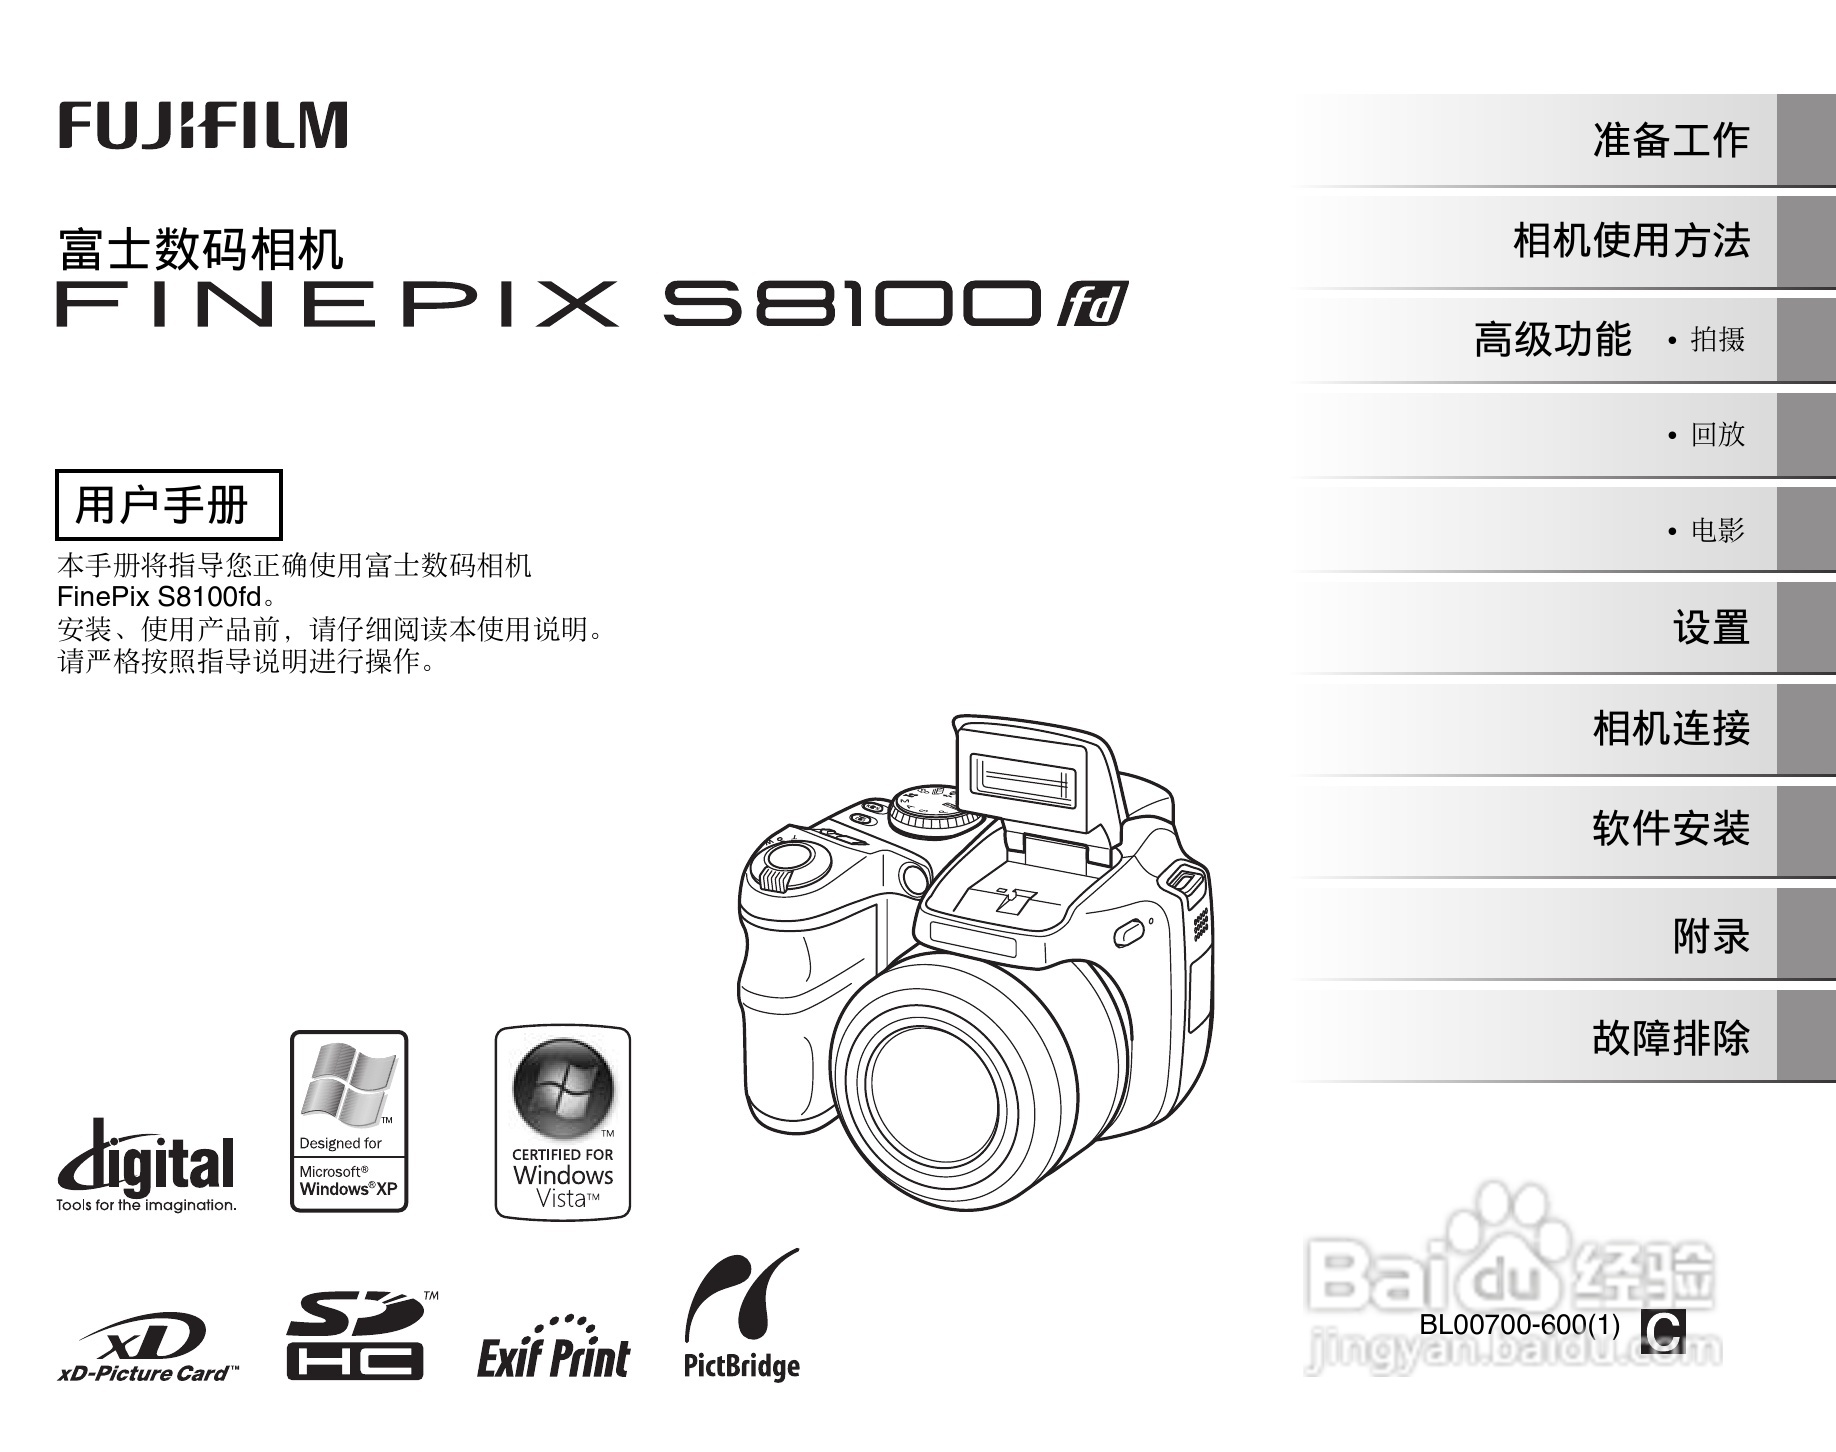 富士finepix s8100fd数码相机使用说明书:[1]